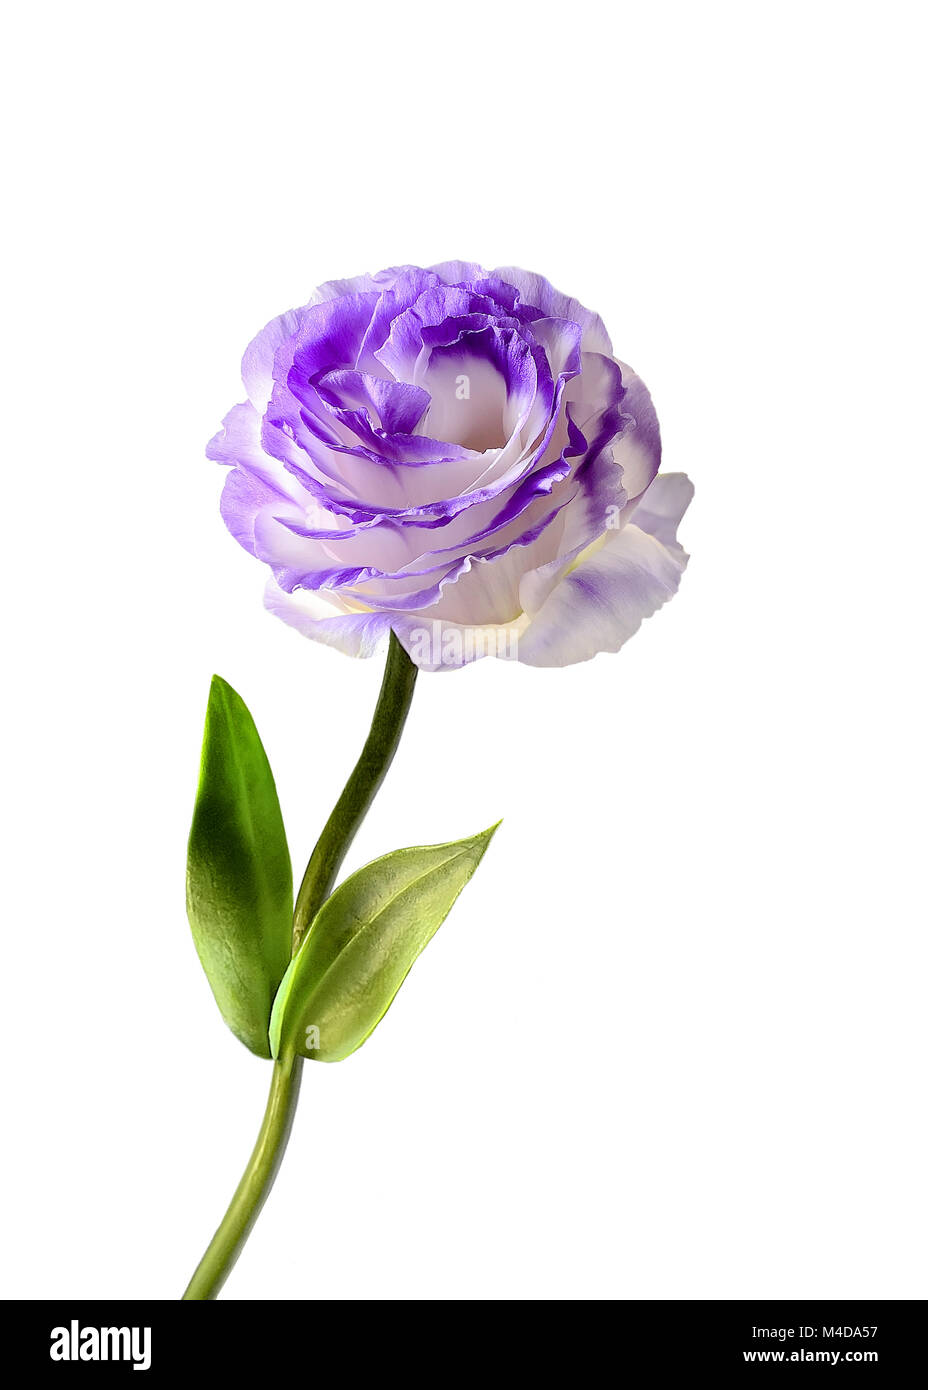 Eustoma flower isolated on a white background Stock Photo